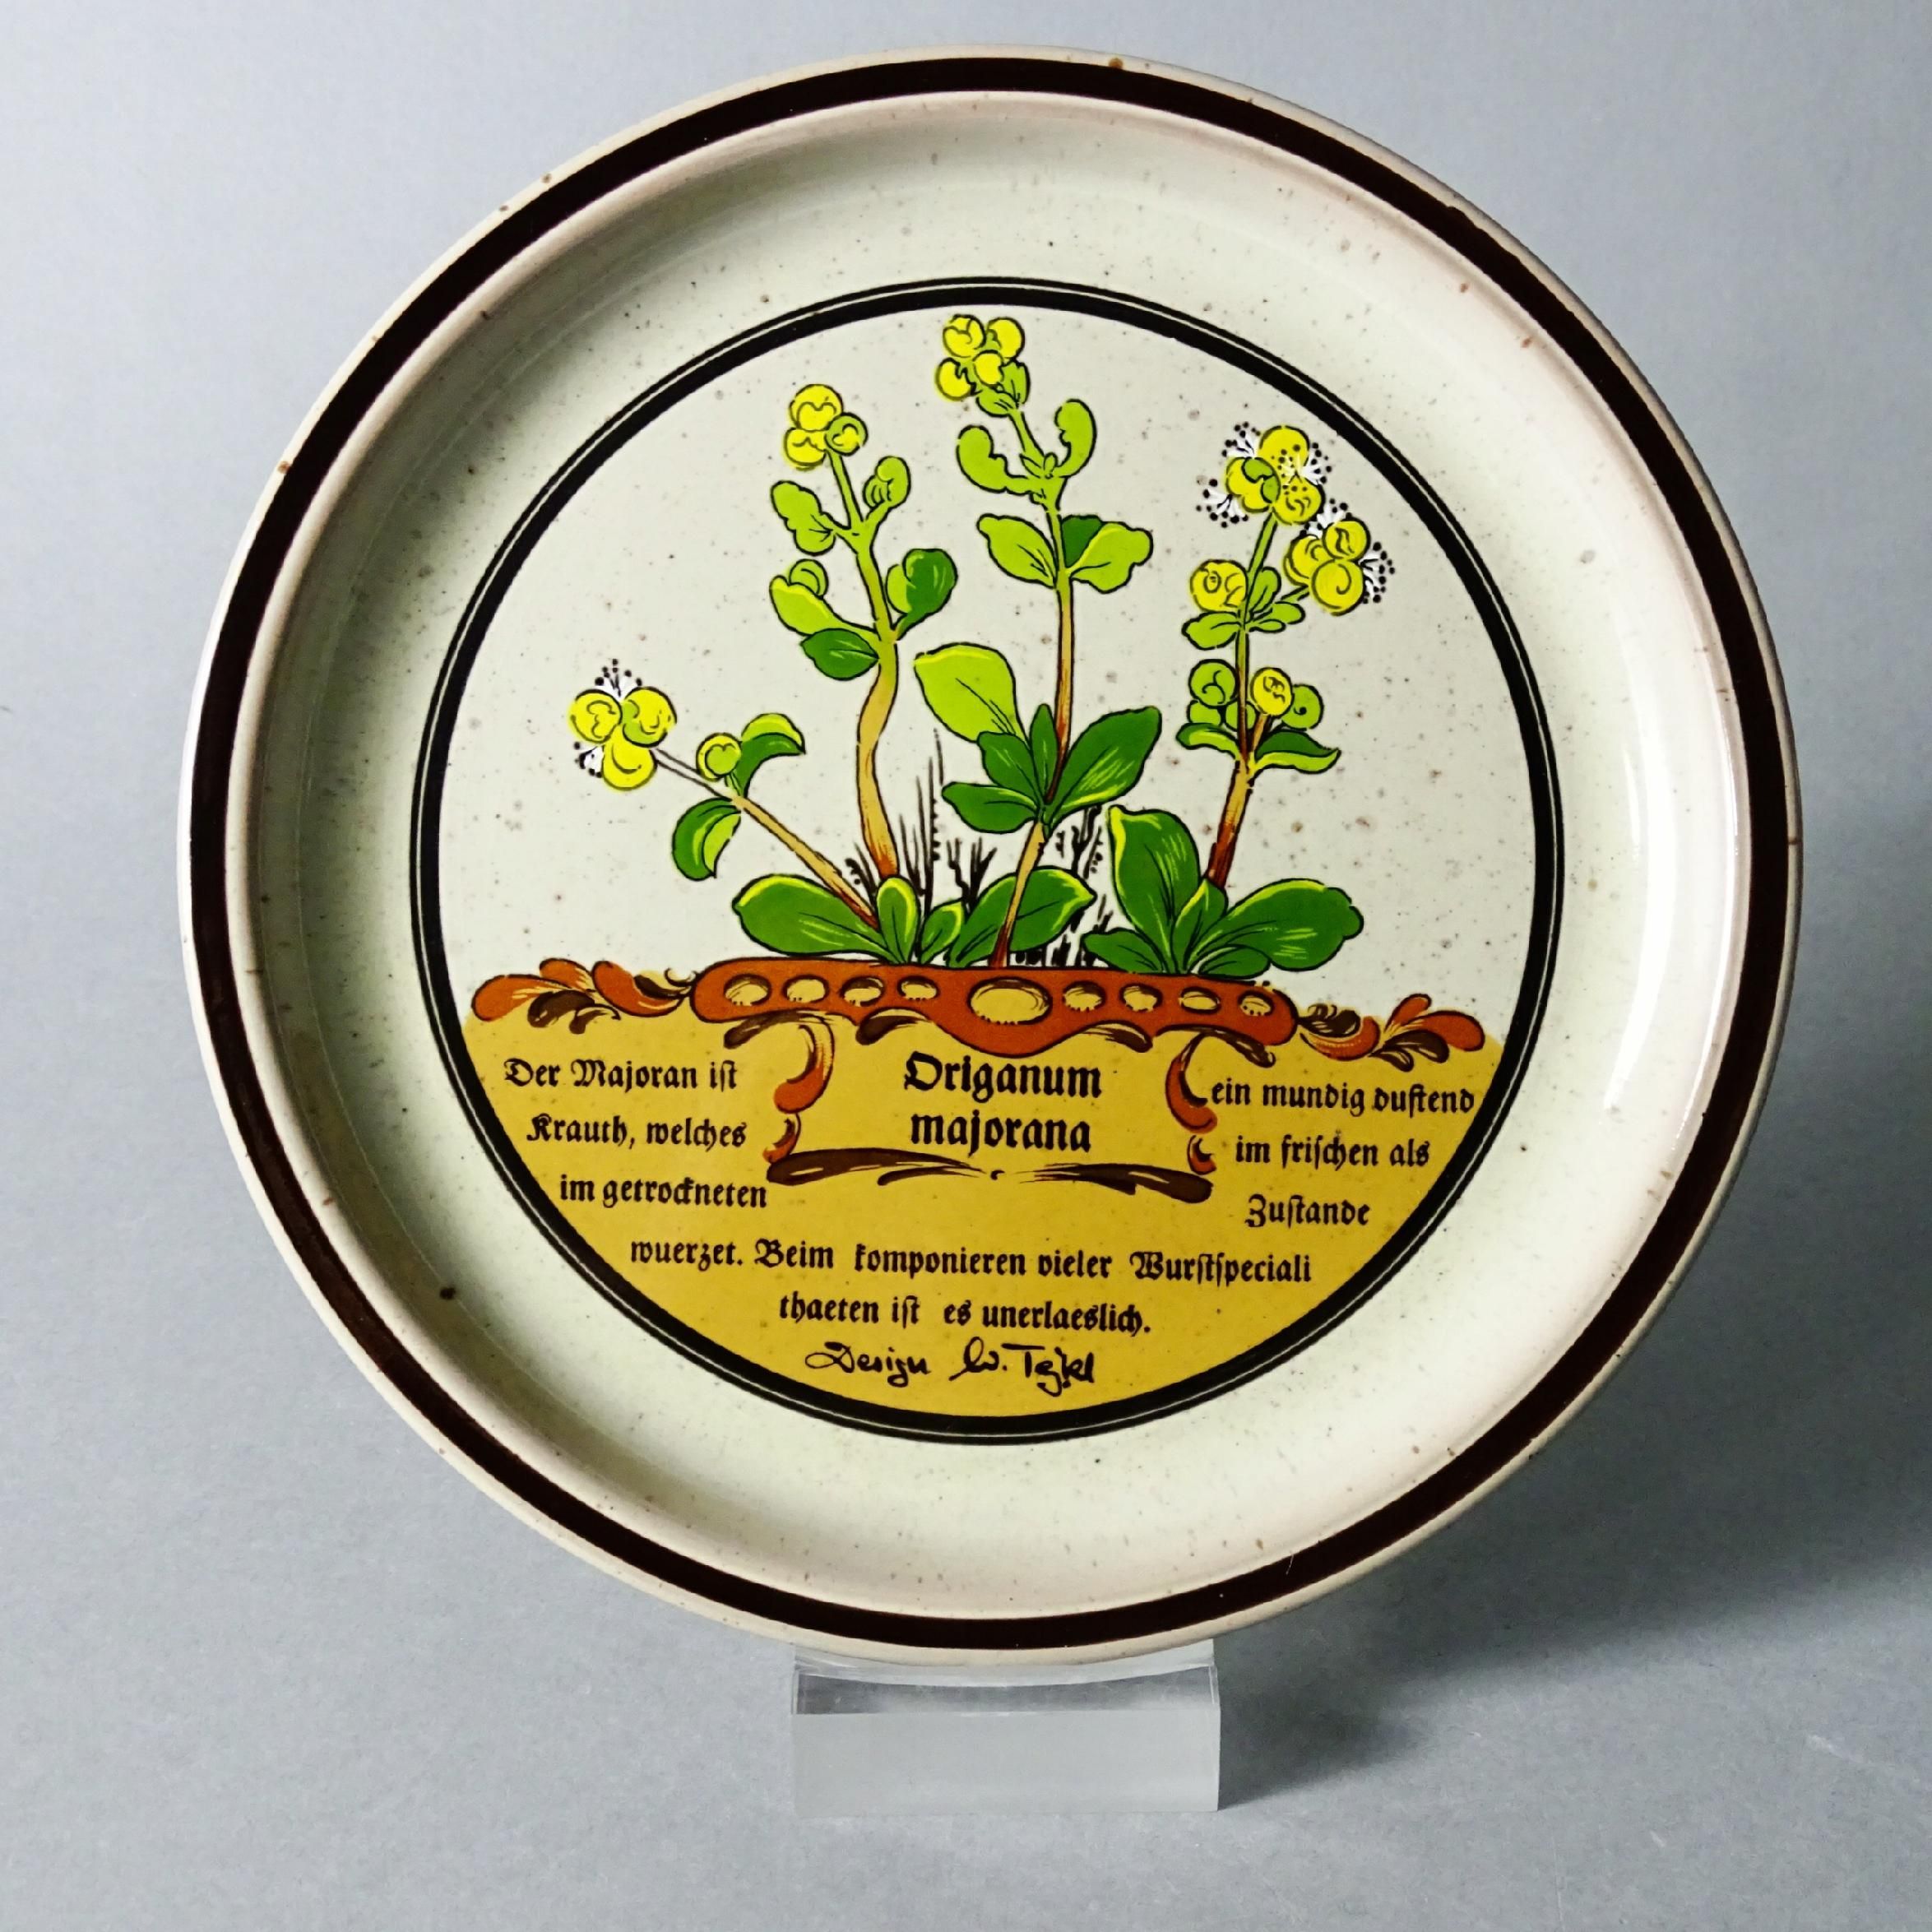 piękny talerz ceramiczny majeranek zioła lata 70/80-te